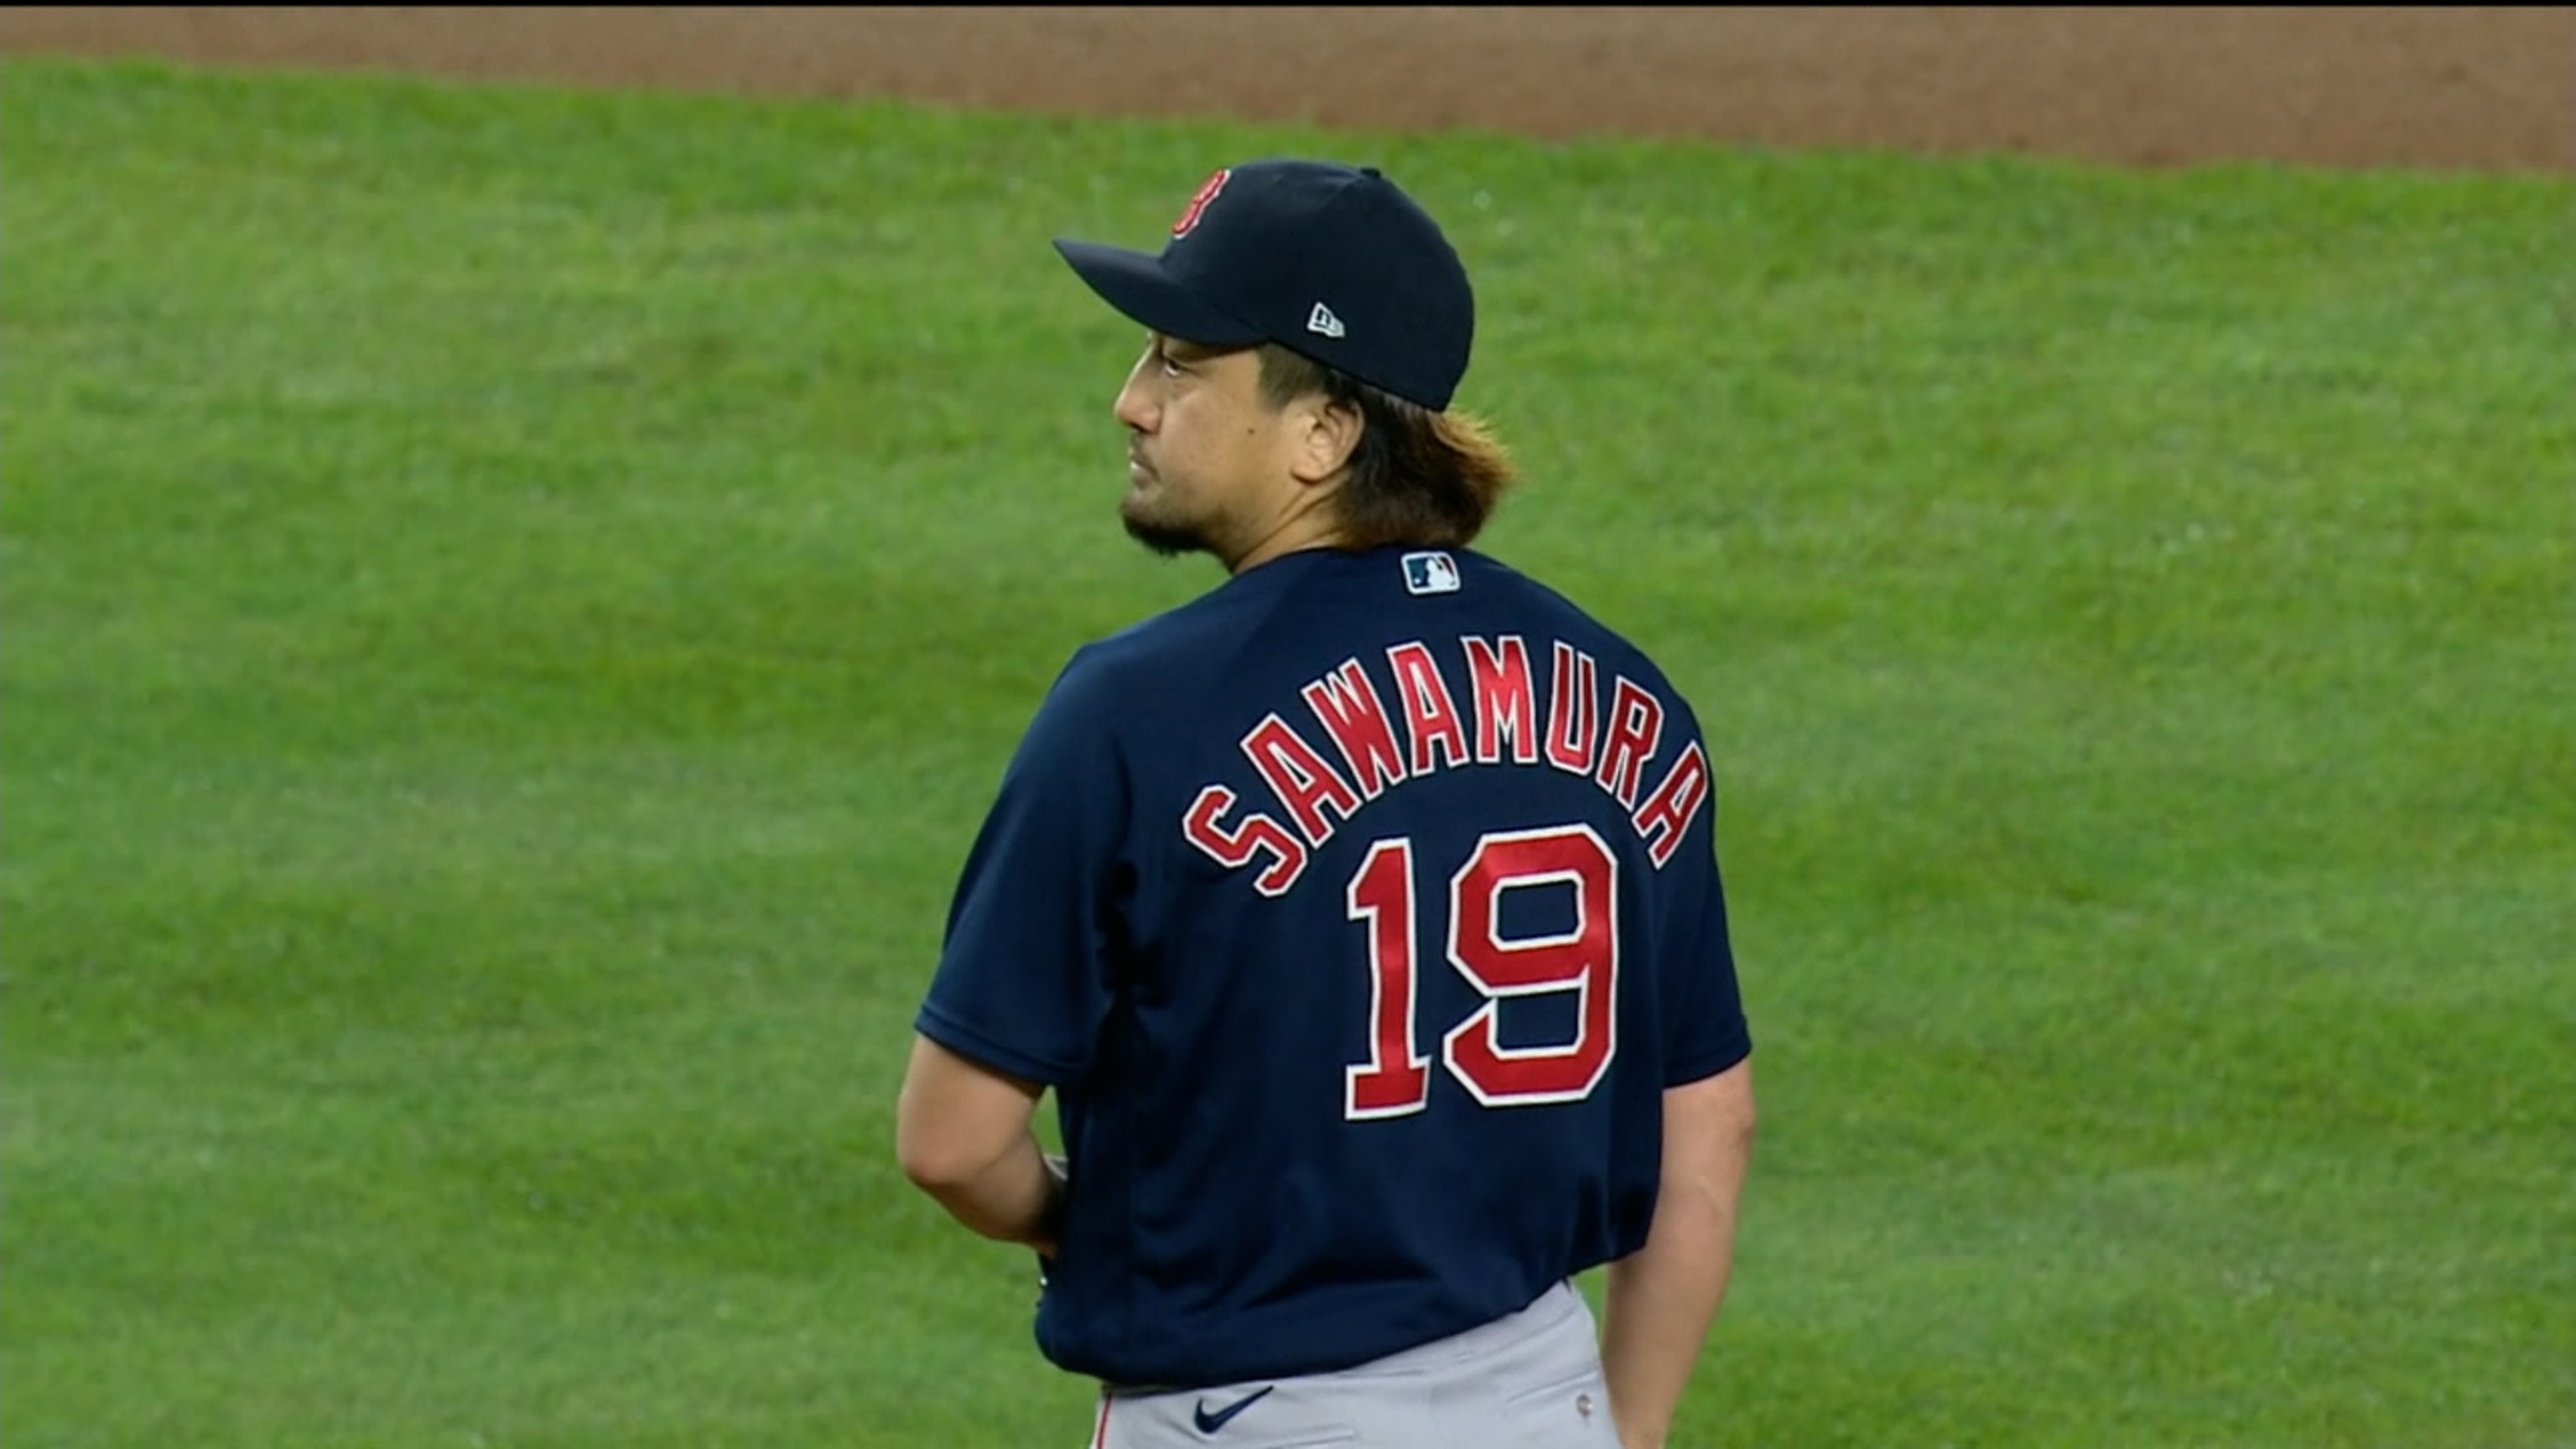 Hirokazu Sawamura #19 May 29, 2021 Miami Marlins at Boston Red Sox